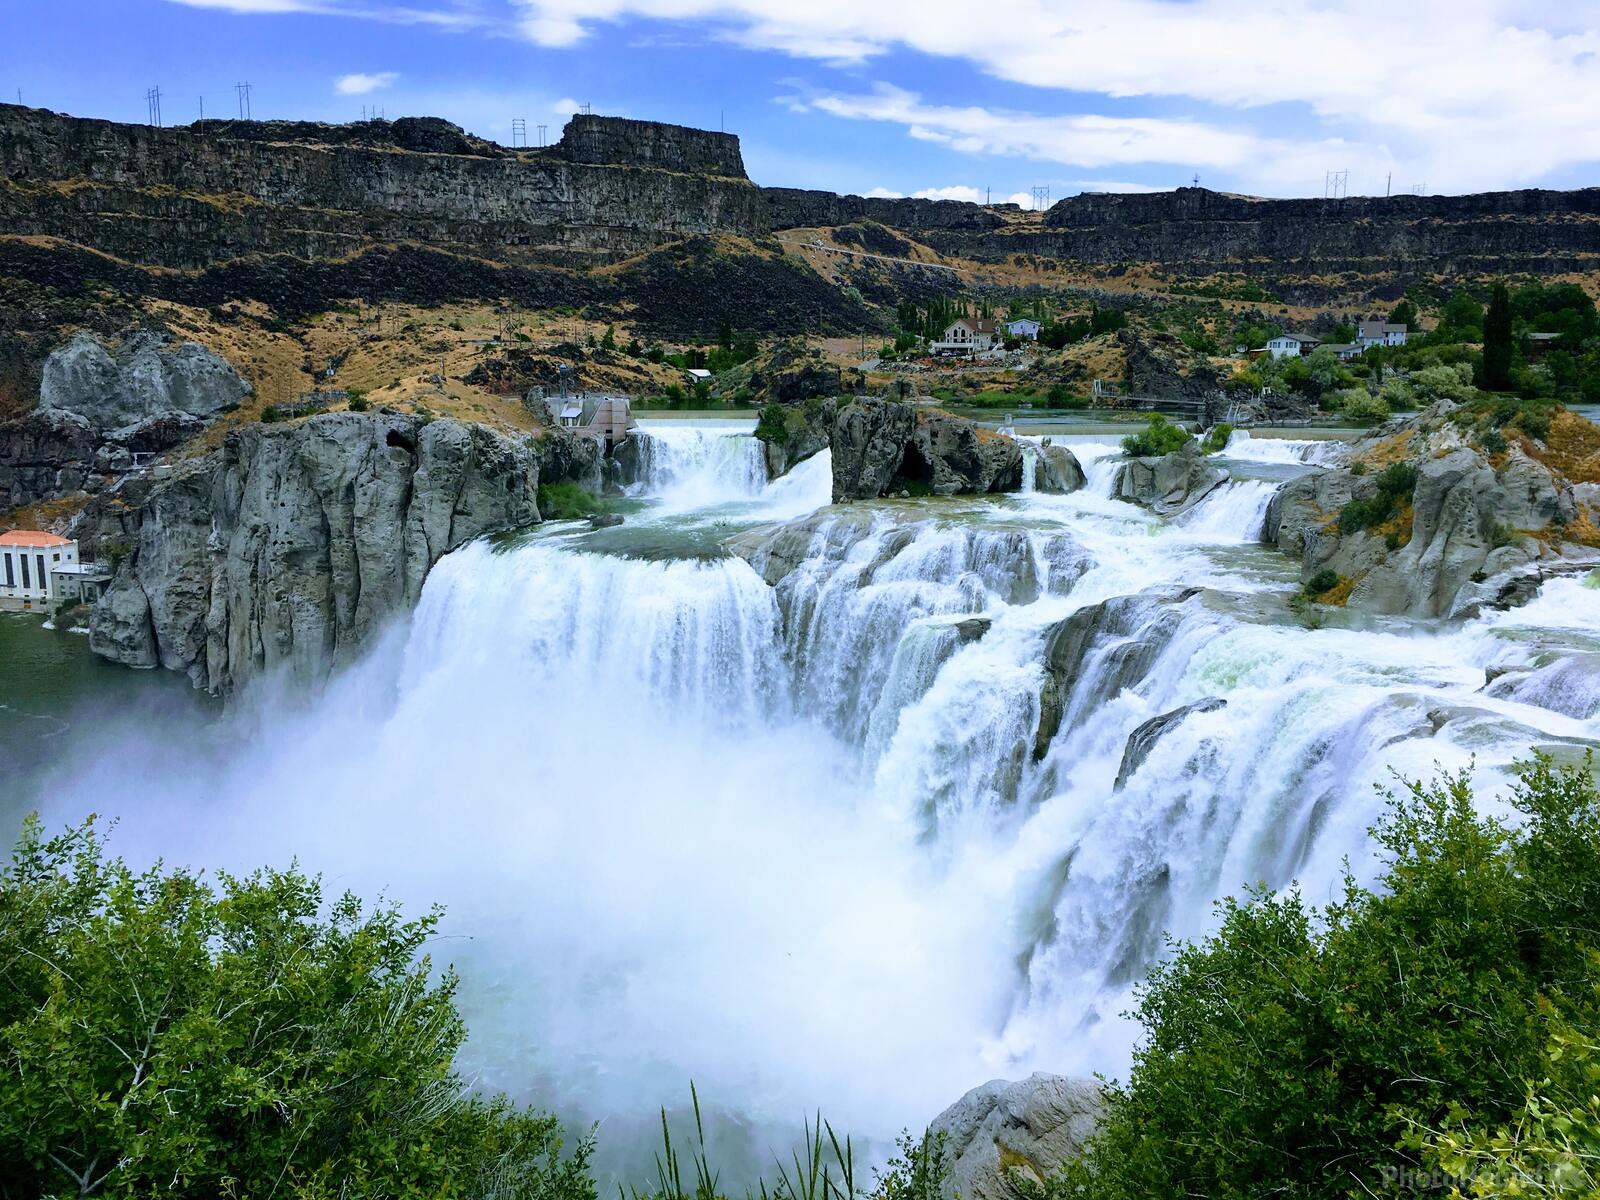 Image of Shoshone Falls, Idaho by Team PhotoHound